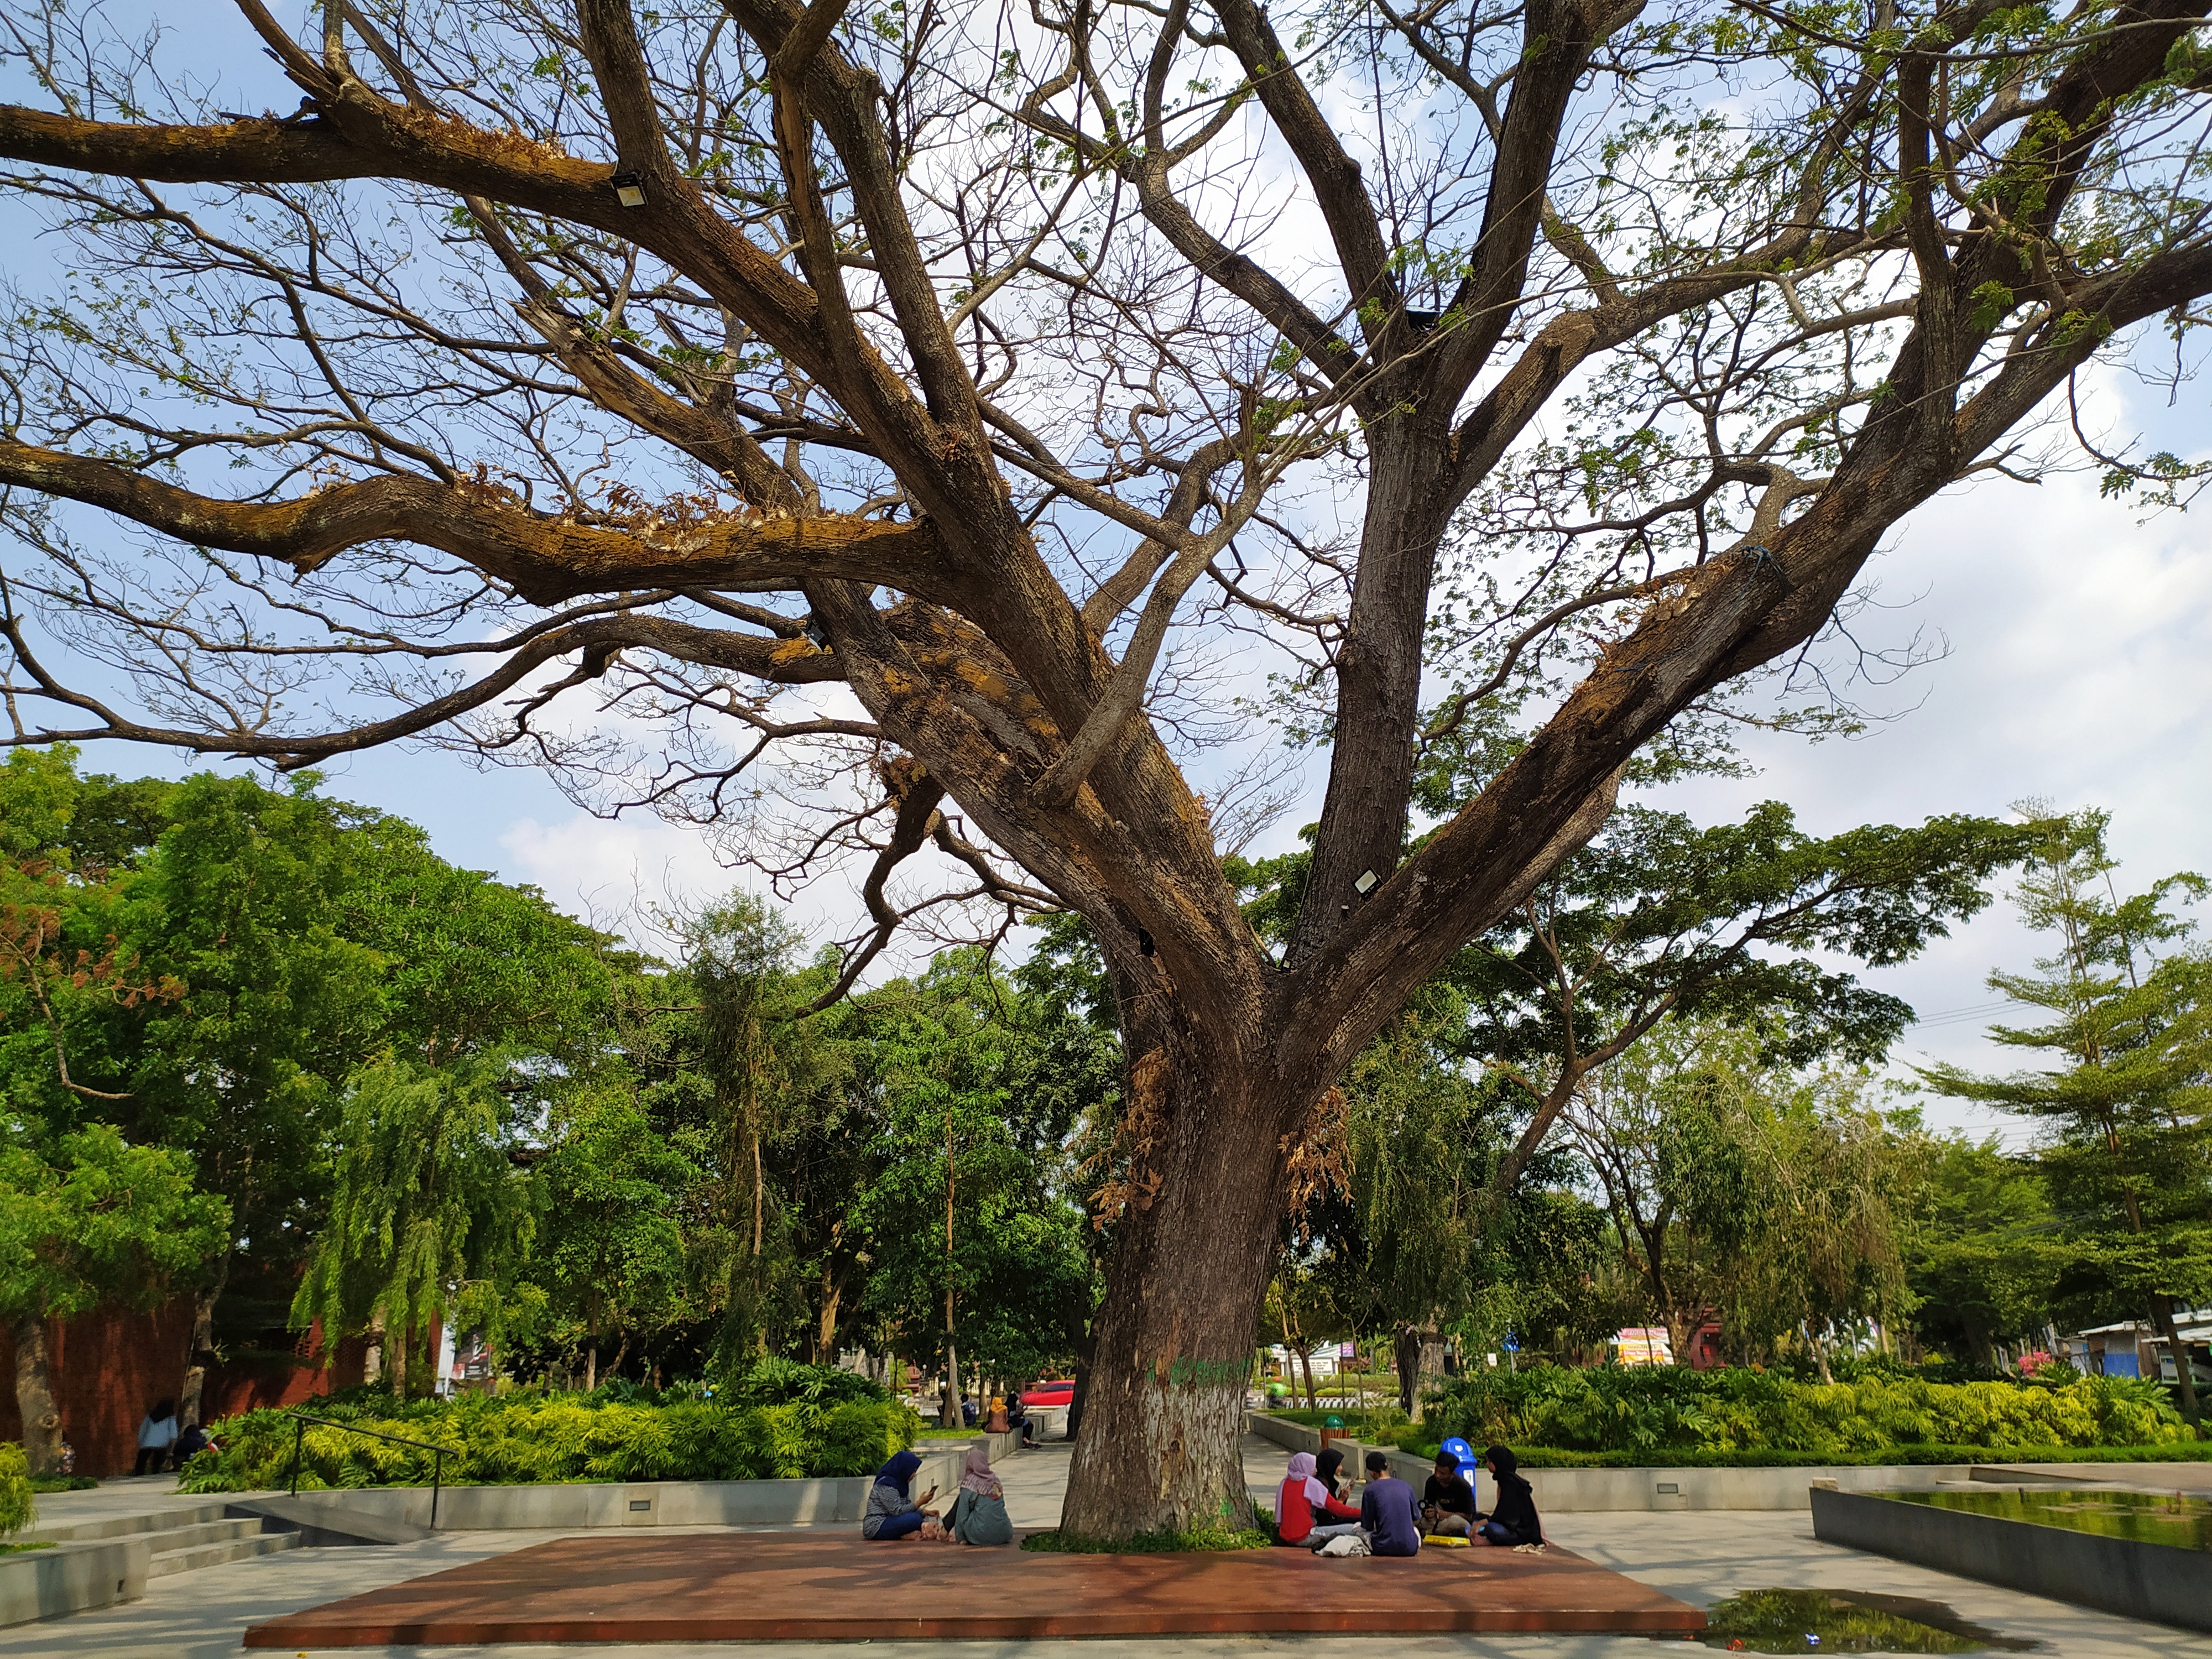 bangku-bangku taman yang tersedia di bawah pohon